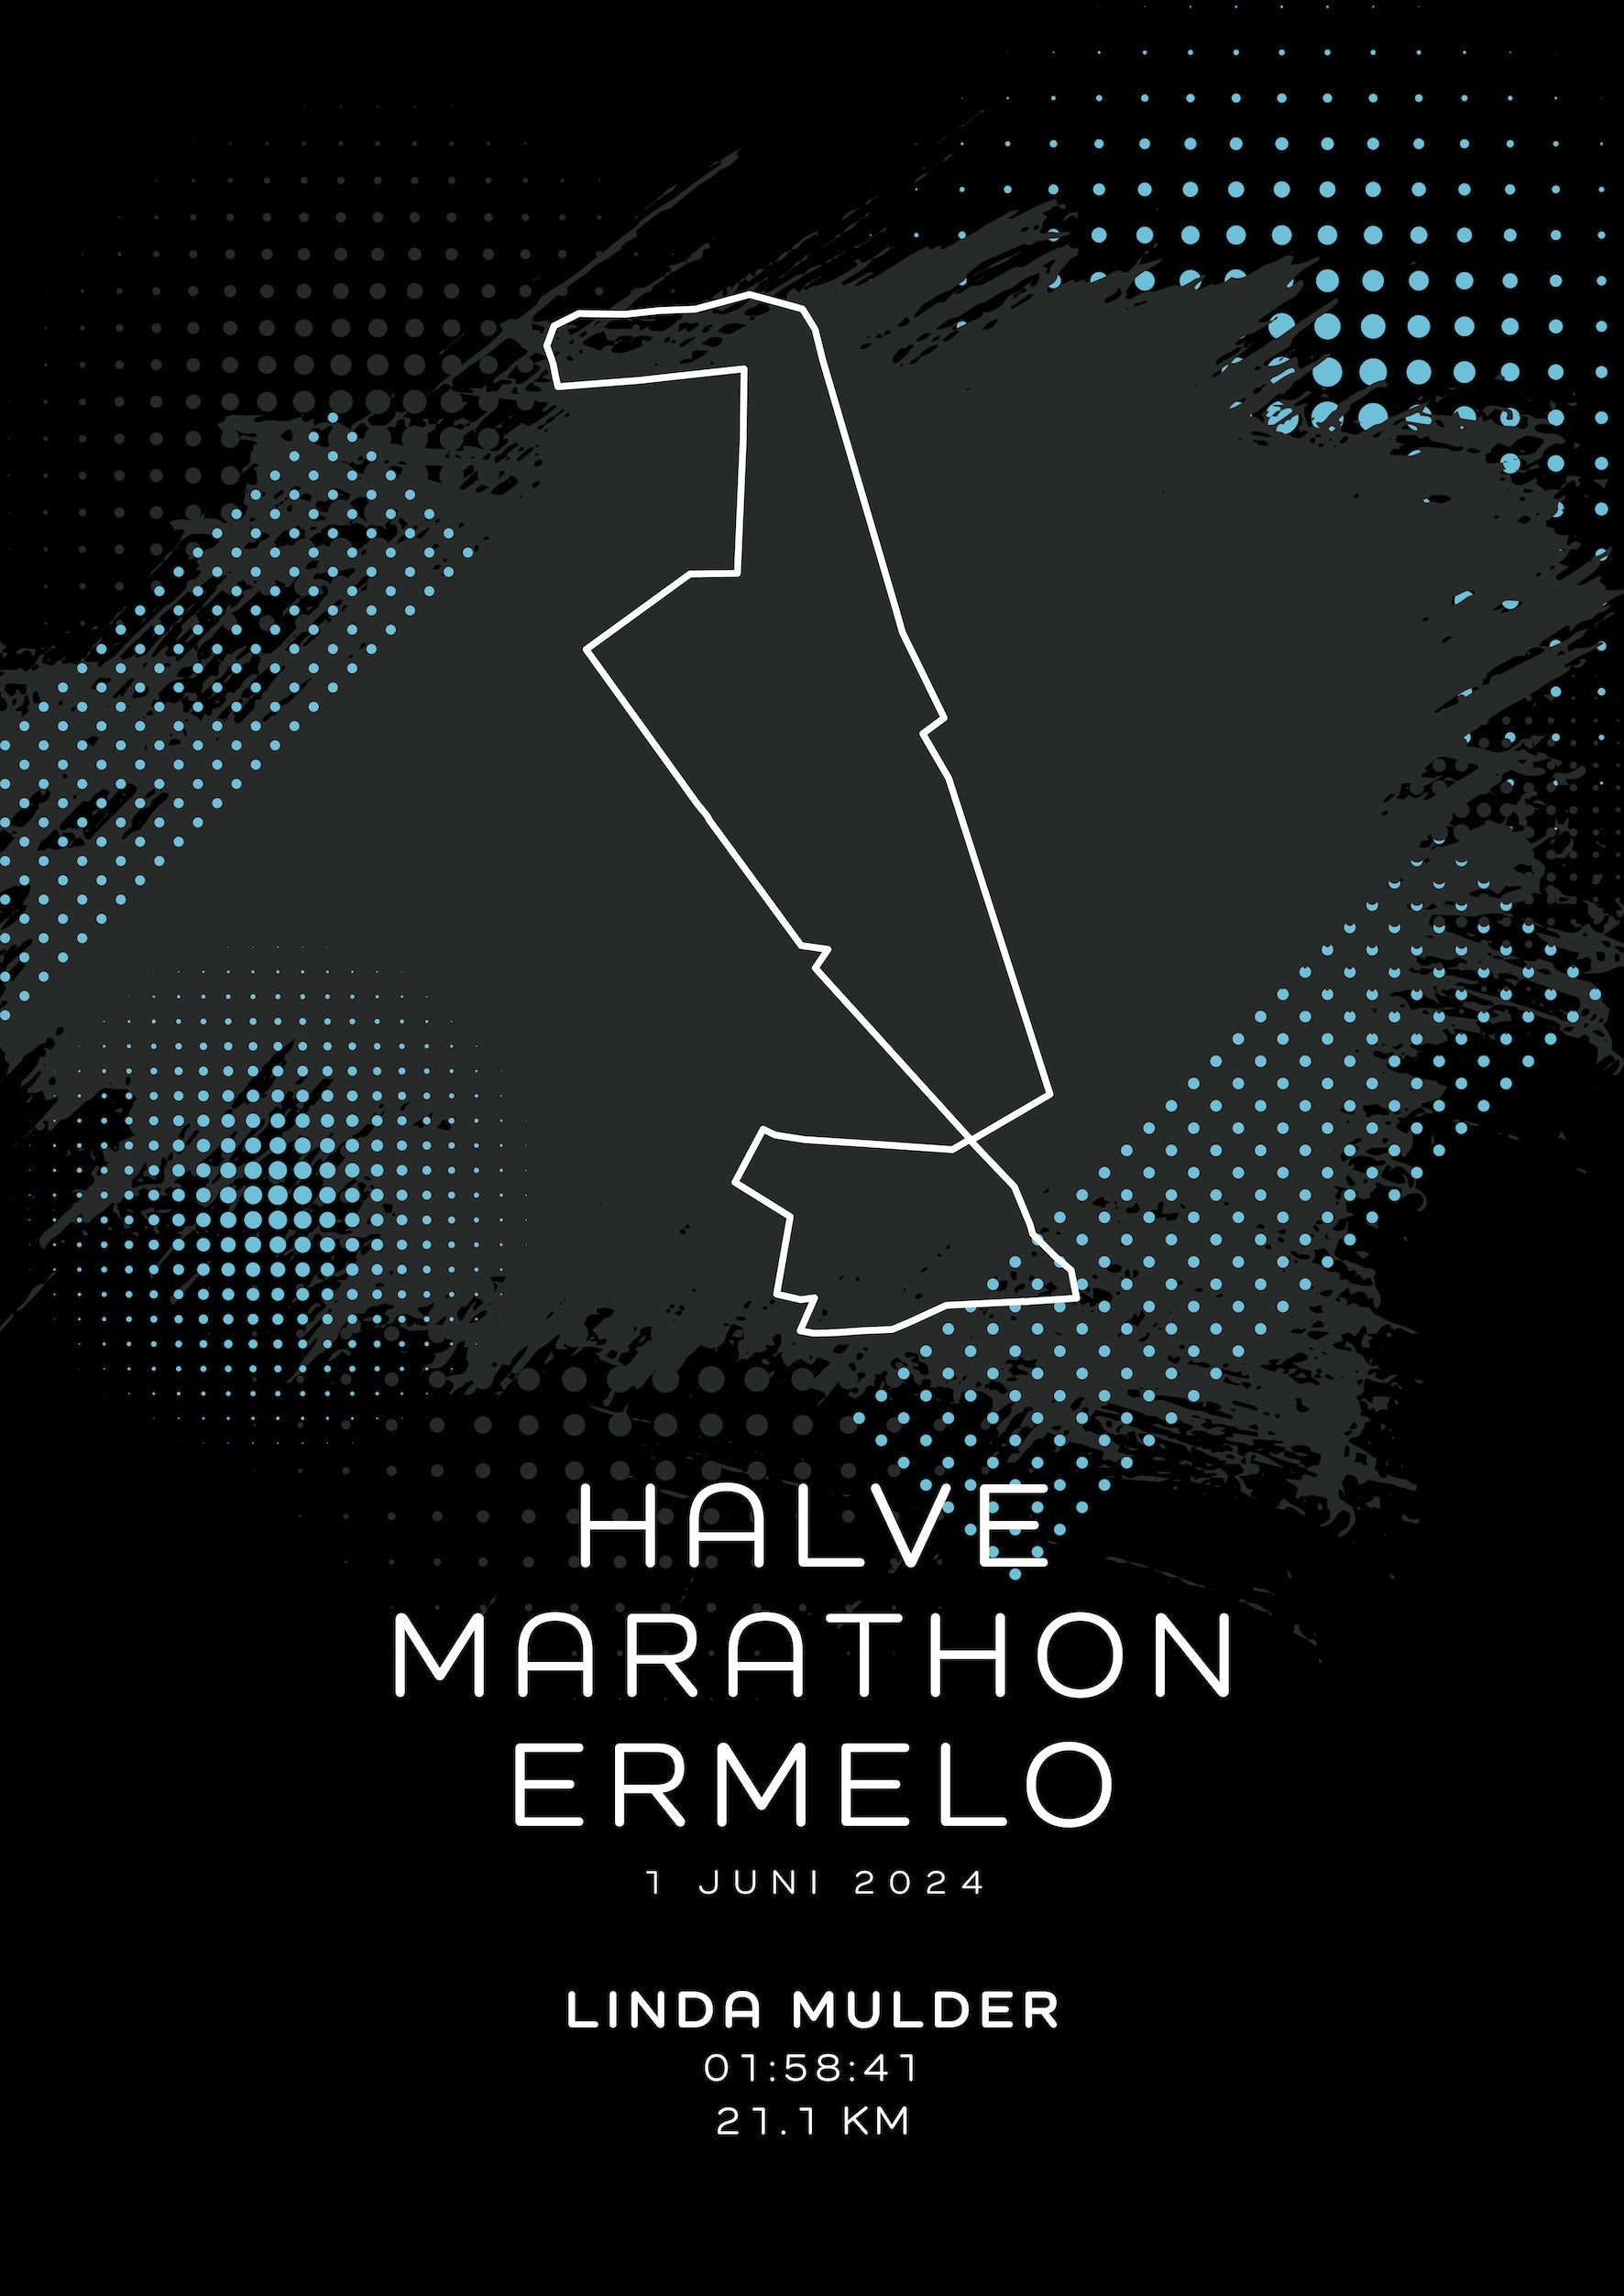 Halve Marathon Ermelo - Modern Dark - Poster